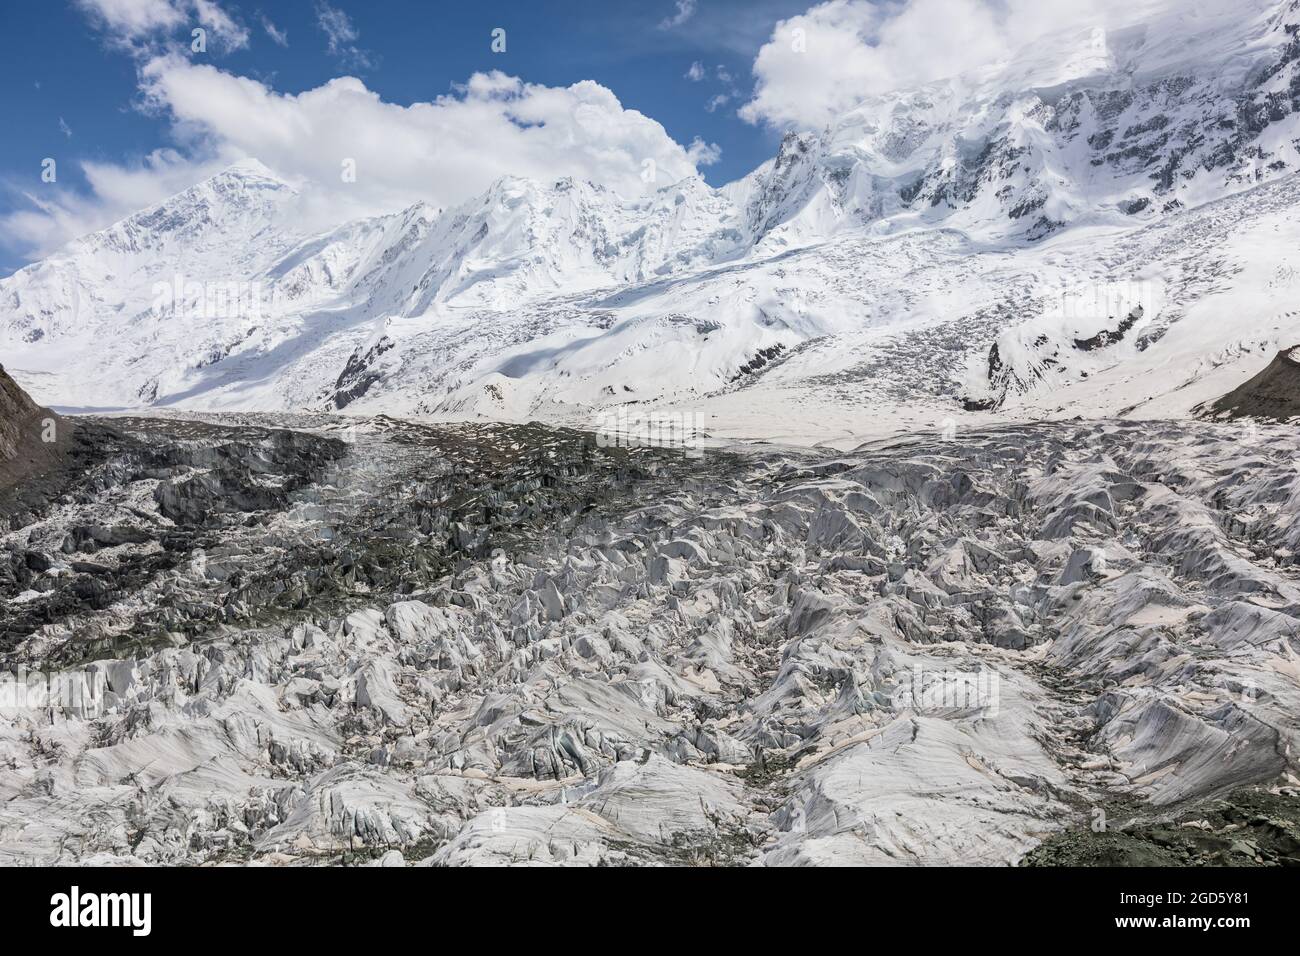 Karakorum mountains: Rakaposhi mountain top and glacier Stock Photo